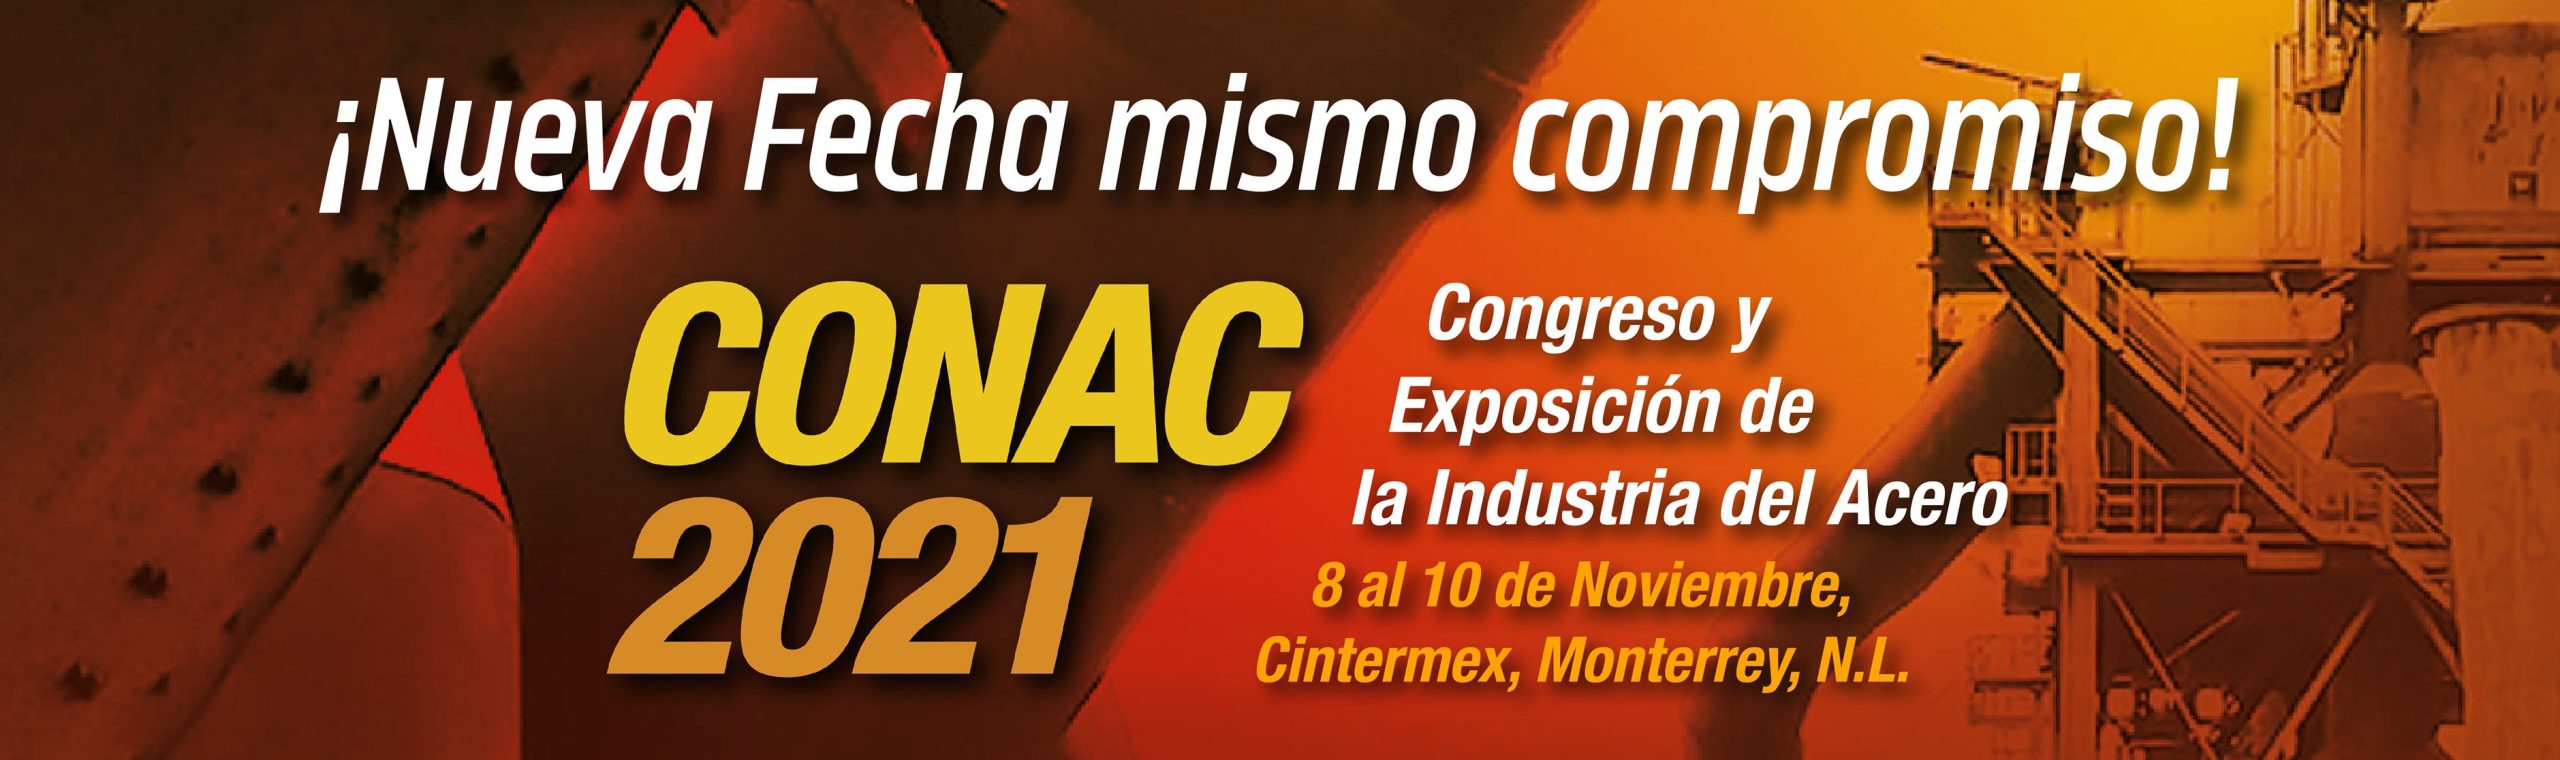 CONAC - Congreso y Exposición de la Industria del Acero facebook.com